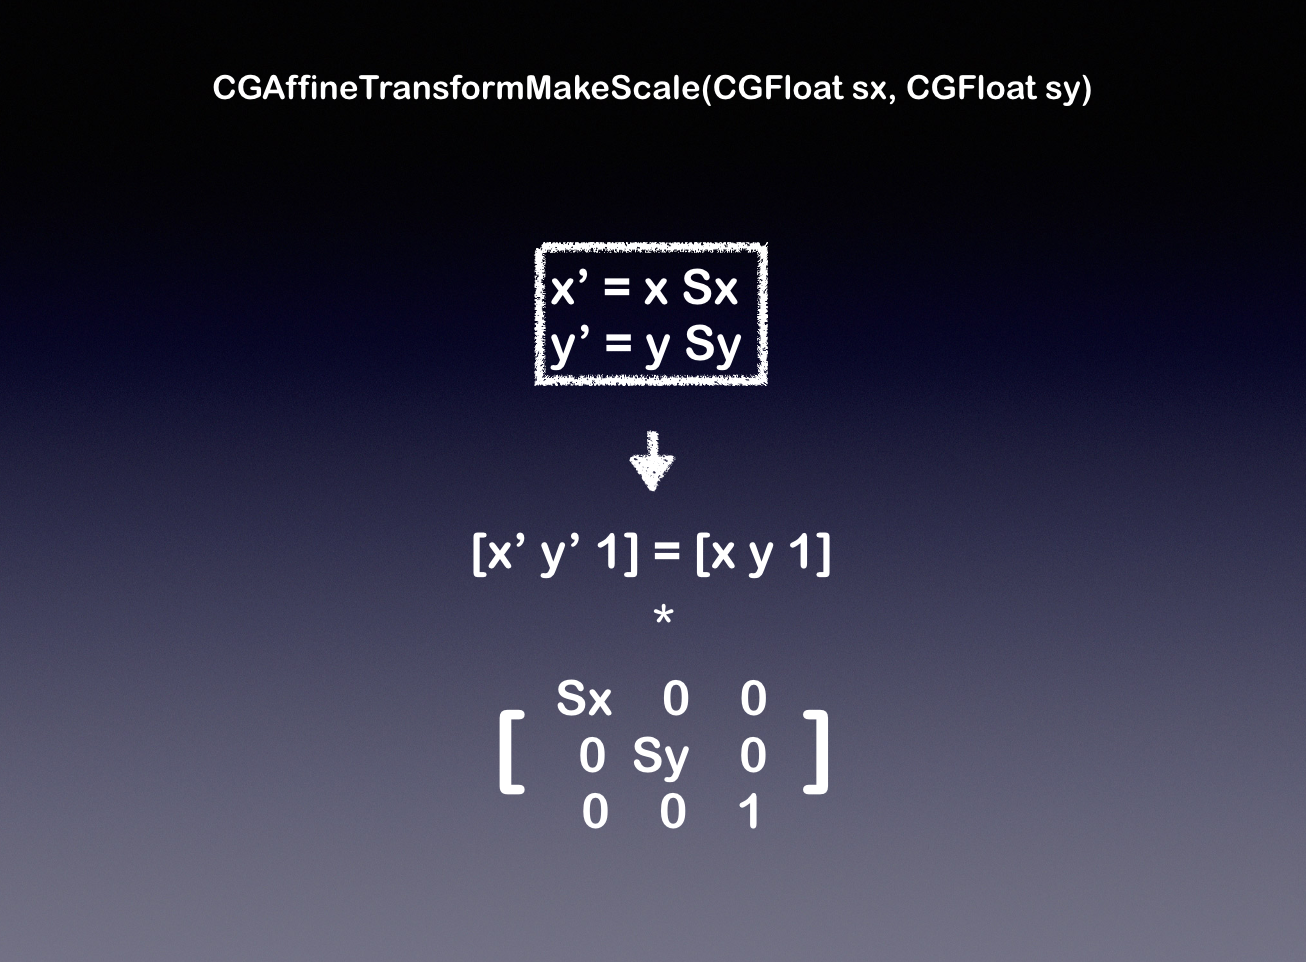 CGAffineTransformScale